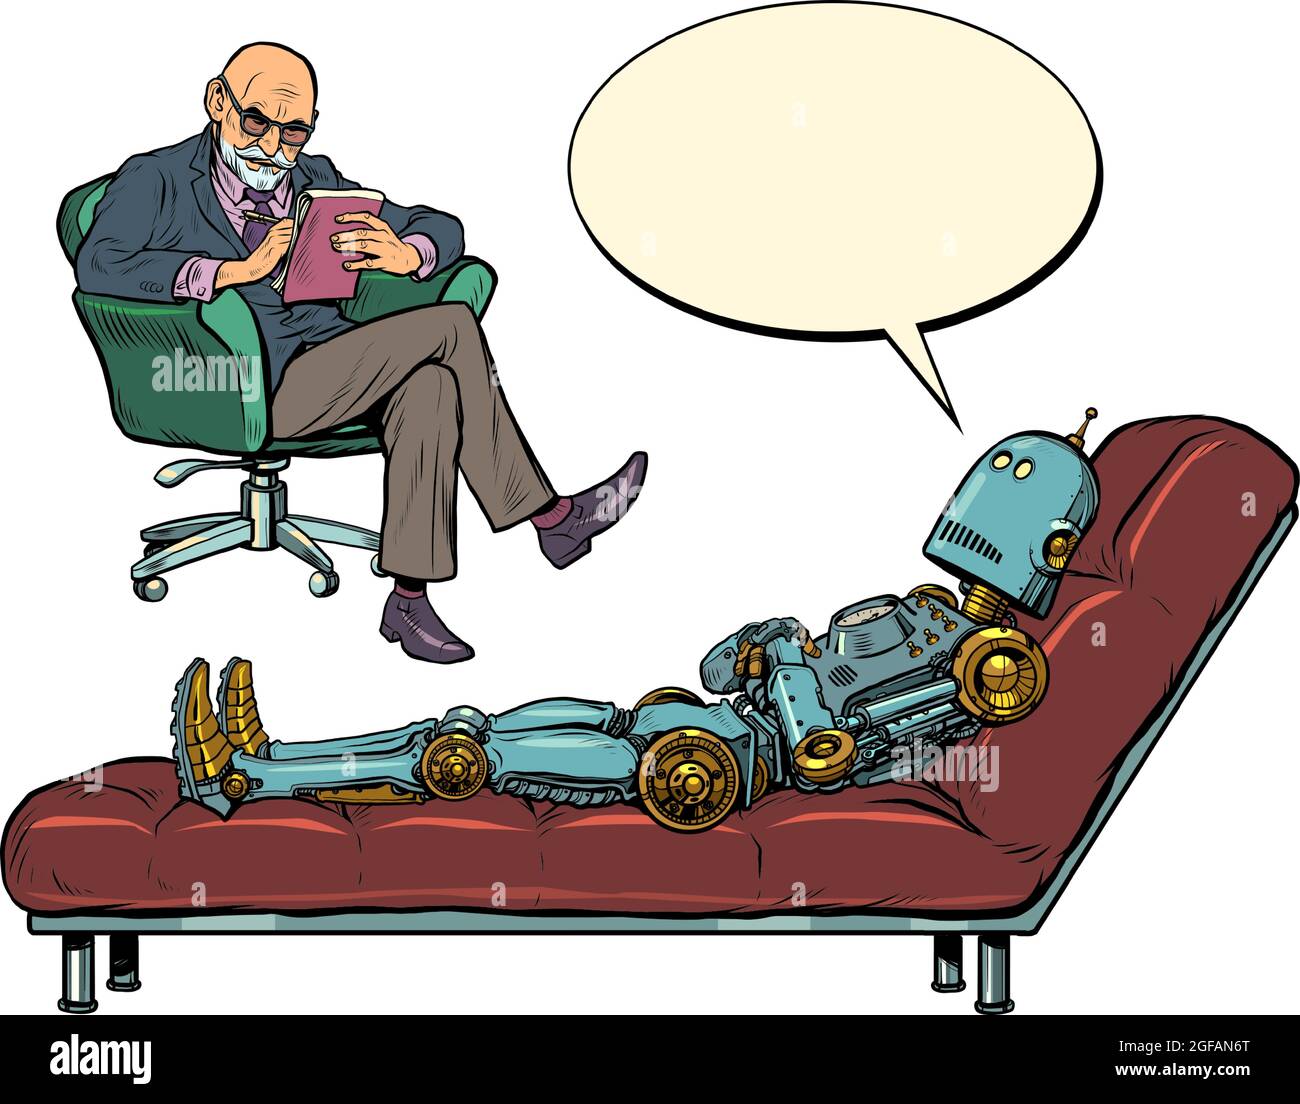 Un psychothérapeute masculin lors d'une séance de psychothérapie, écoute un robot patient, s'assoit dans une chaise et prend des notes dans un carnet Illustration de Vecteur